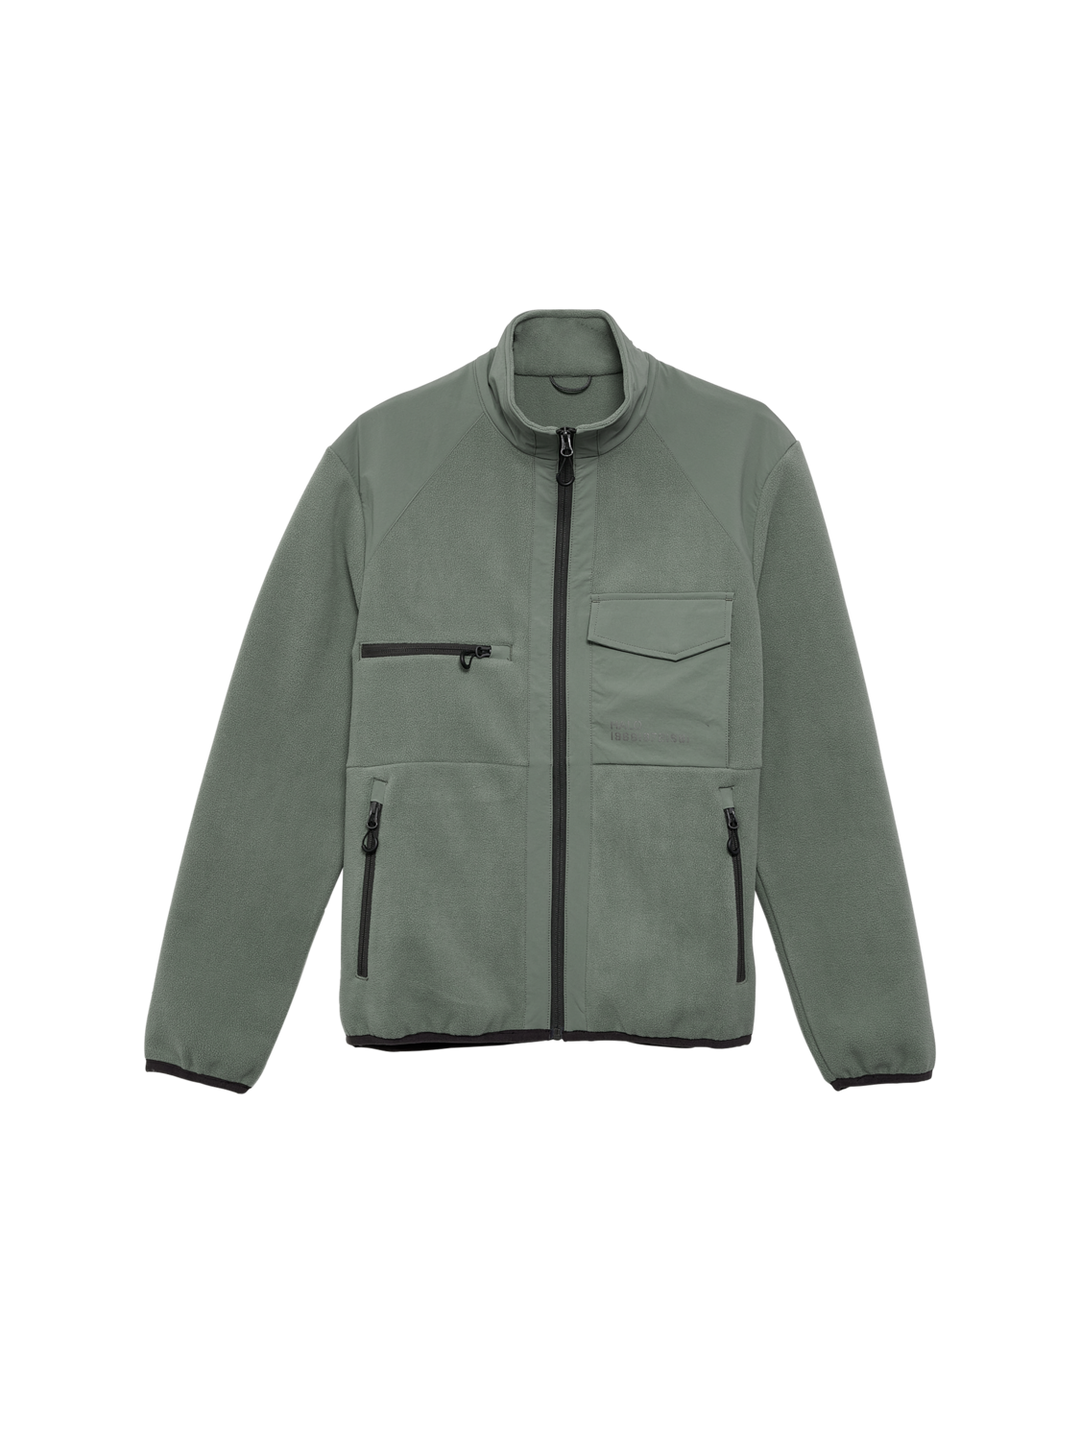 Halo Paneled Fleece jacket